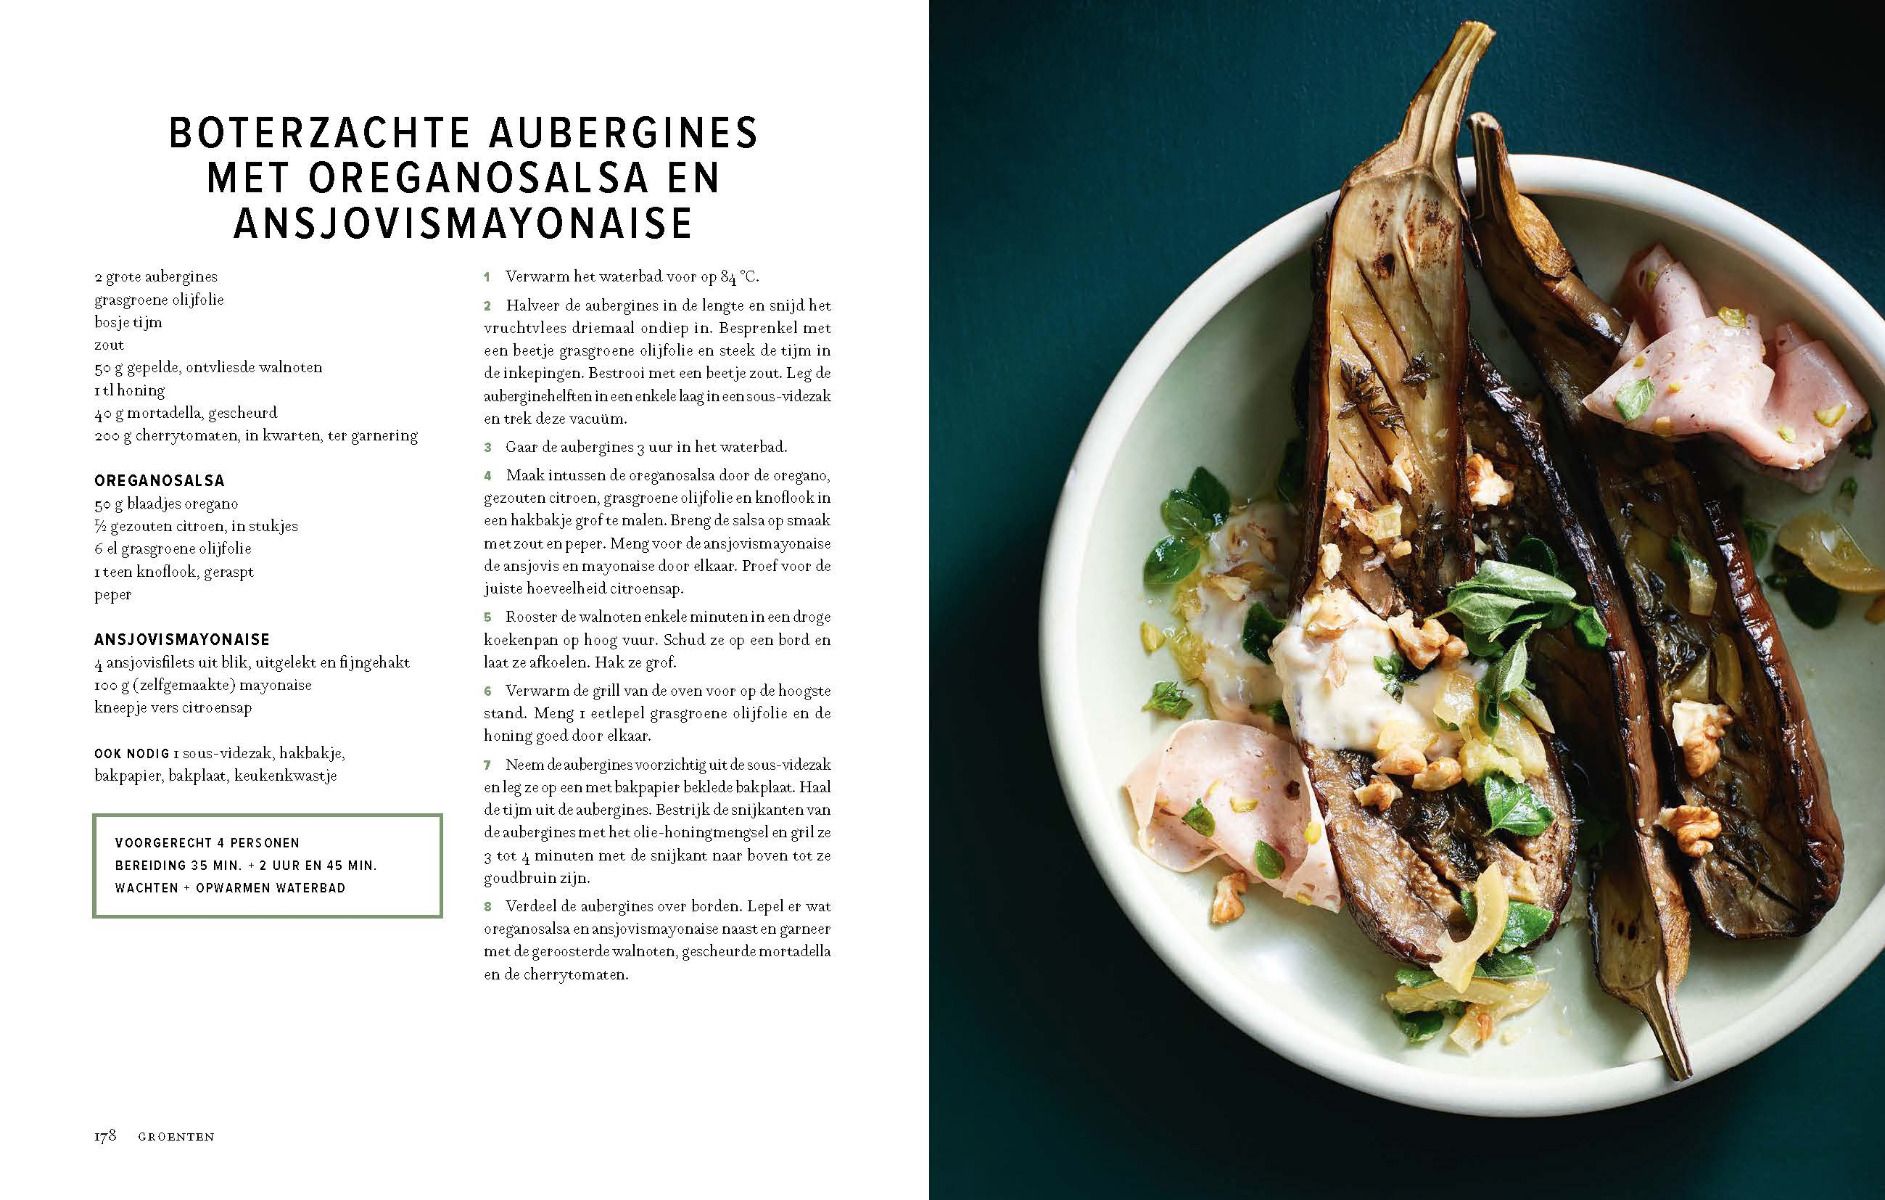 Sous-vide kookboek van Bas Robben